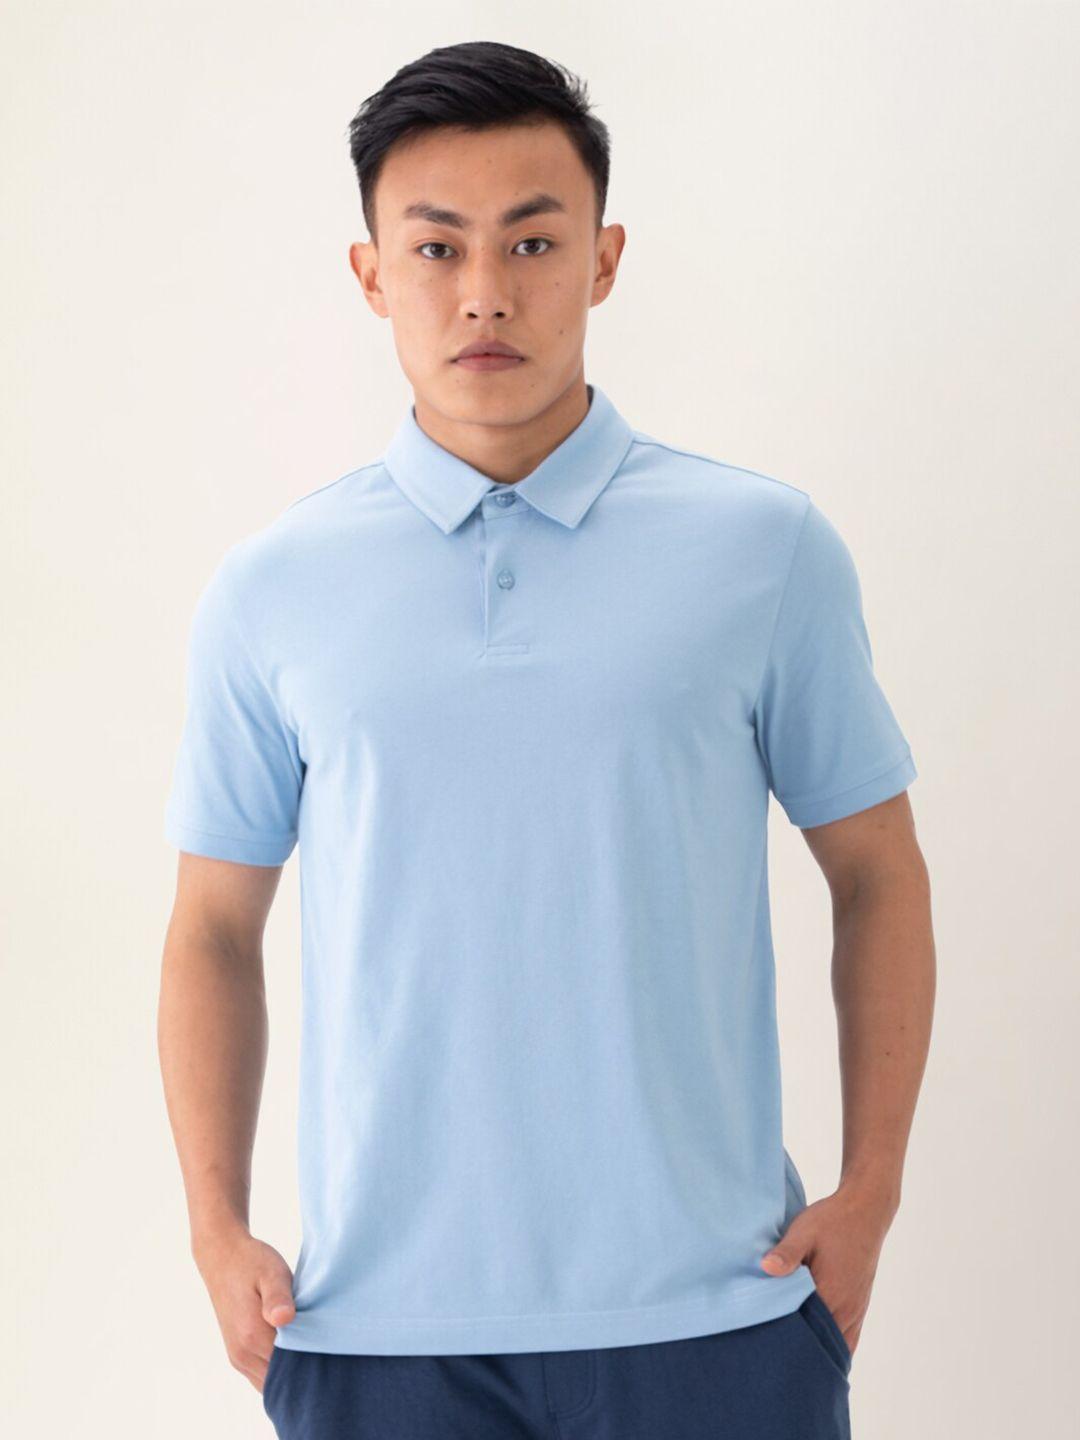 damensch-men-blue-thermoregulating-polo-t-shirt